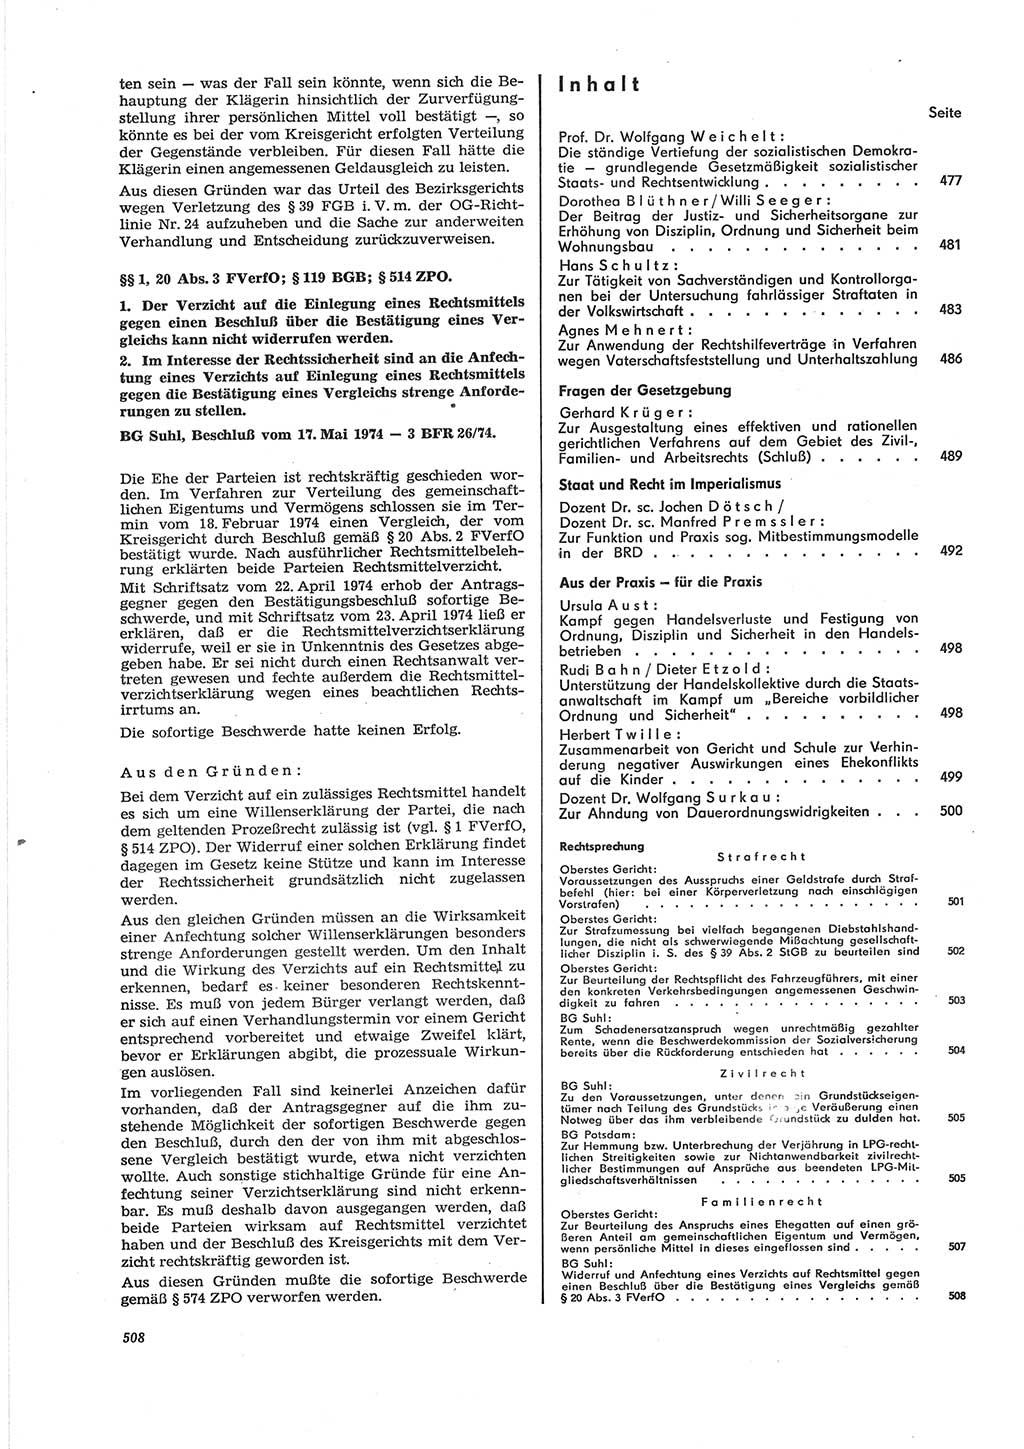 Neue Justiz (NJ), Zeitschrift für Recht und Rechtswissenschaft [Deutsche Demokratische Republik (DDR)], 28. Jahrgang 1974, Seite 508 (NJ DDR 1974, S. 508)